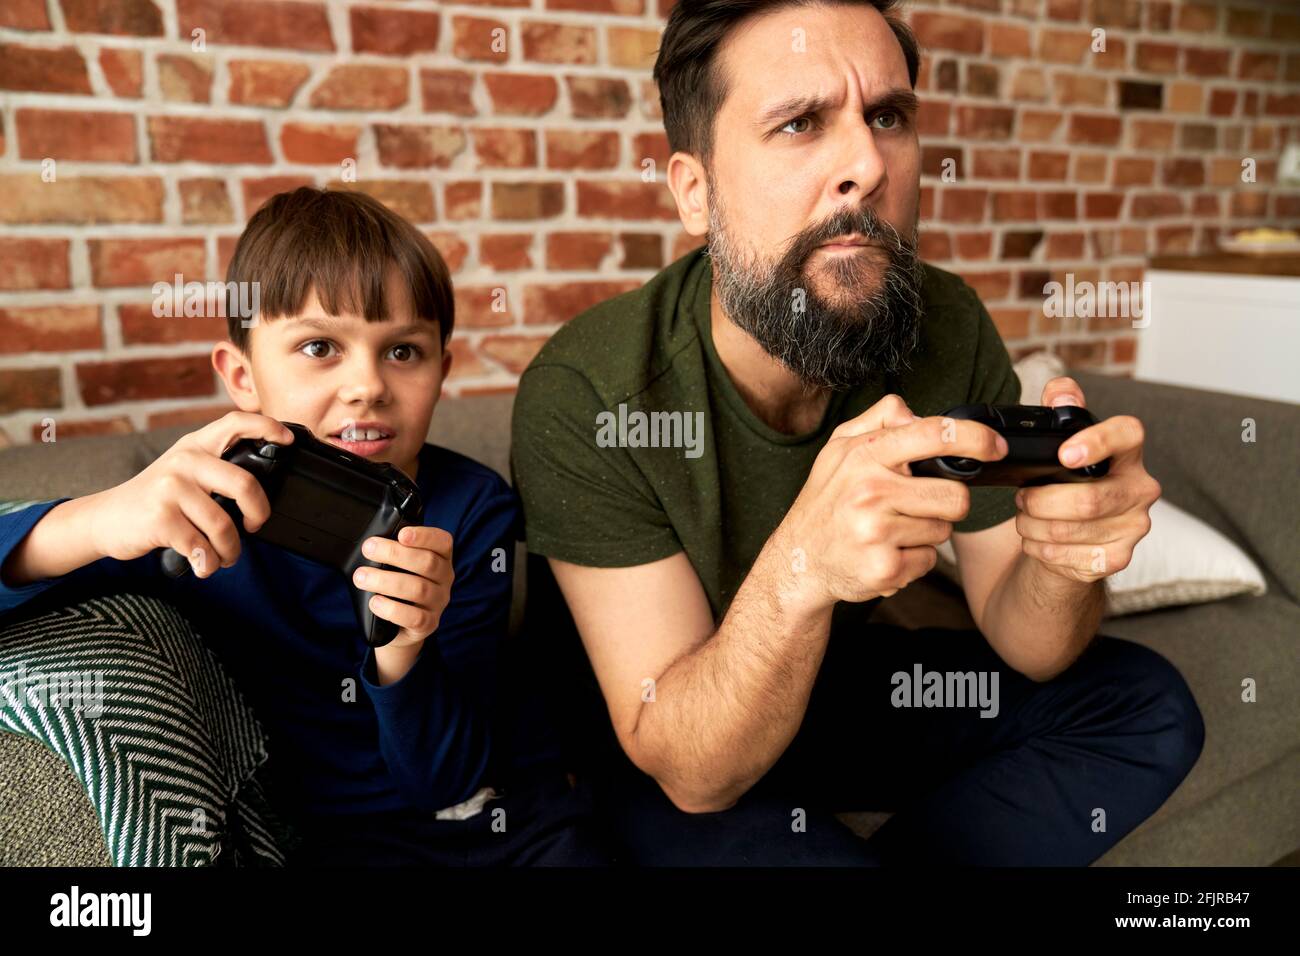 Padre y hijo enfocados sentados y jugando a videojuegos juntos Foto de stock